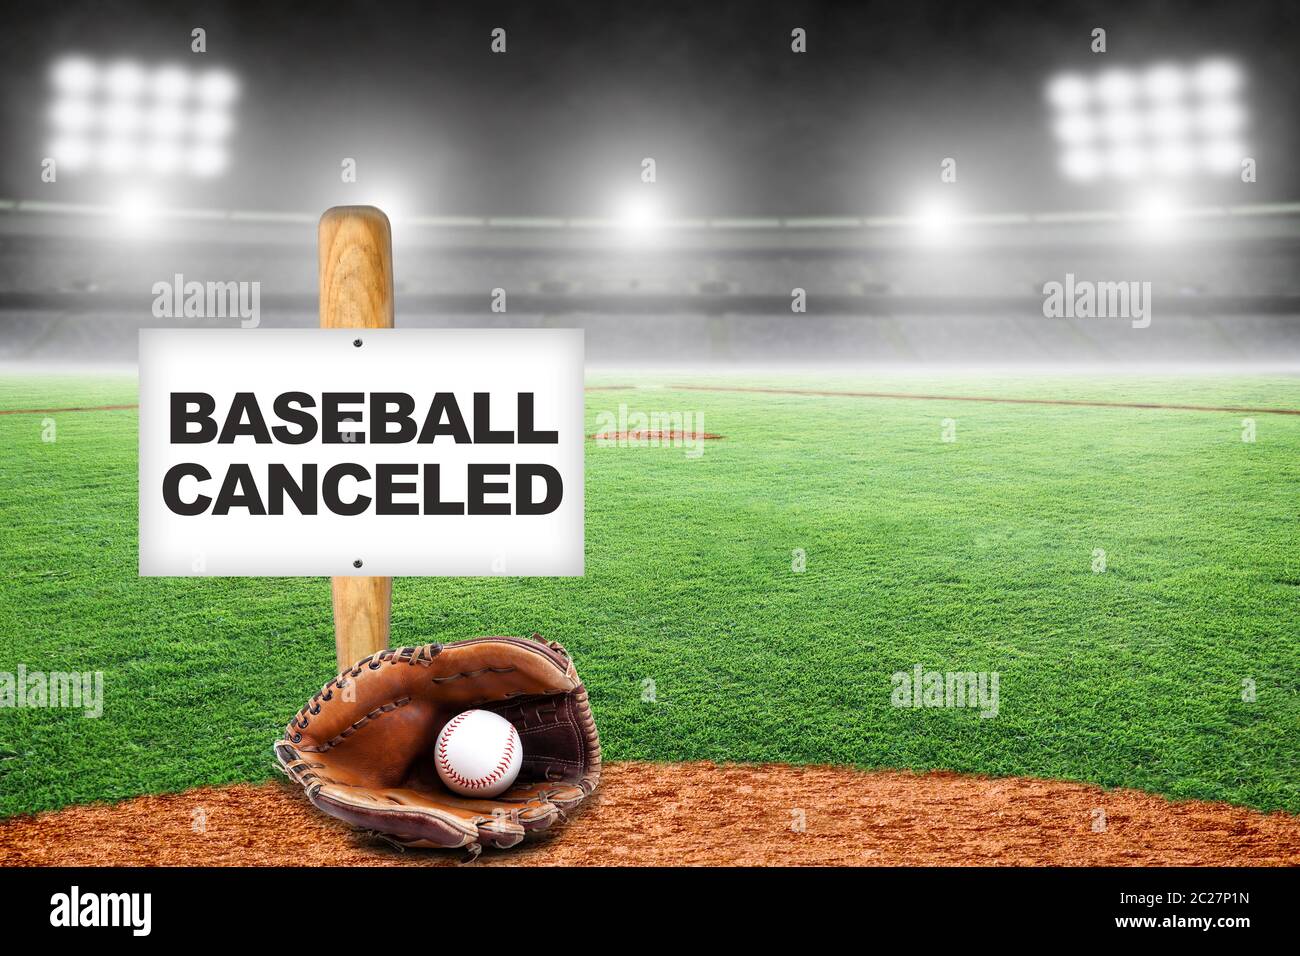 Baseball abgesagt Zeichen auf Baseball-Schläger auf dem Boden mit Handschuh und Ball in leerem Stadion stecken. Konzept der Baseball-Saison wegen Covid-19 abgesagt, Stockfoto